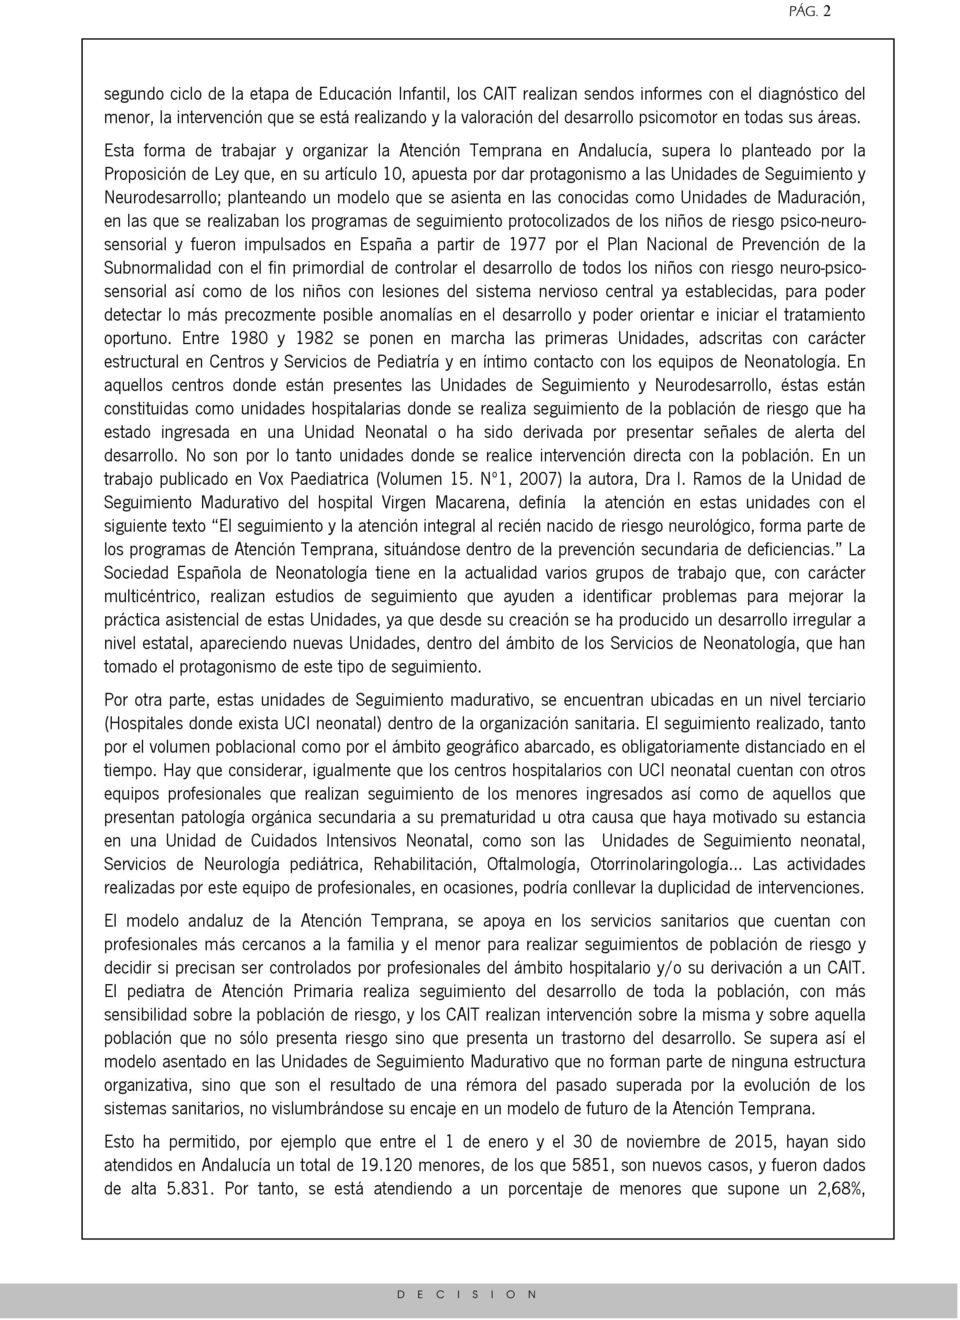 Esta forma de trabajar y organizar la Atención Temprana en Andalucía, supera lo planteado por la Proposición de Ley que, en su artículo 10, apuesta por dar protagonismo a las Unidades de Seguimiento